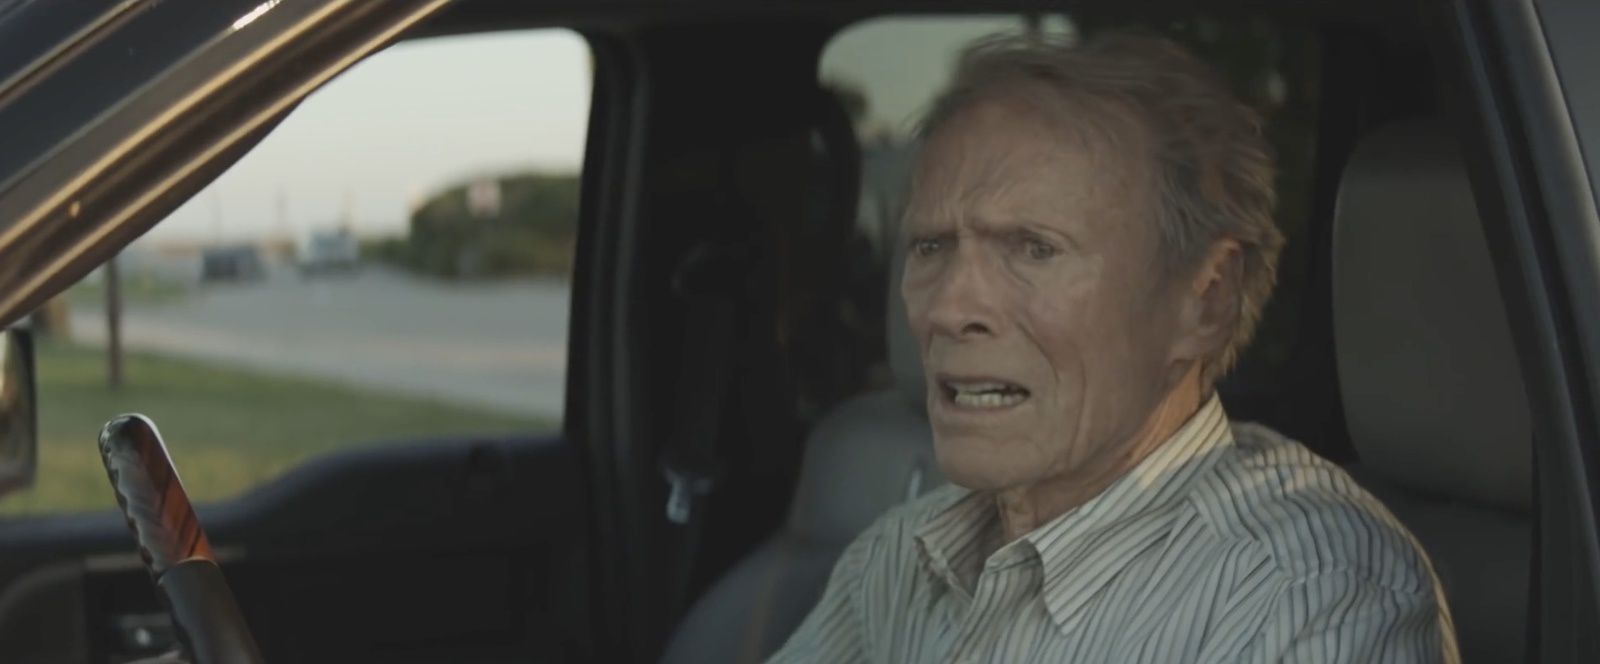 Première bande-annonce du film La mule, de et avec Clint Eastwood. -  LeBlogTVNews